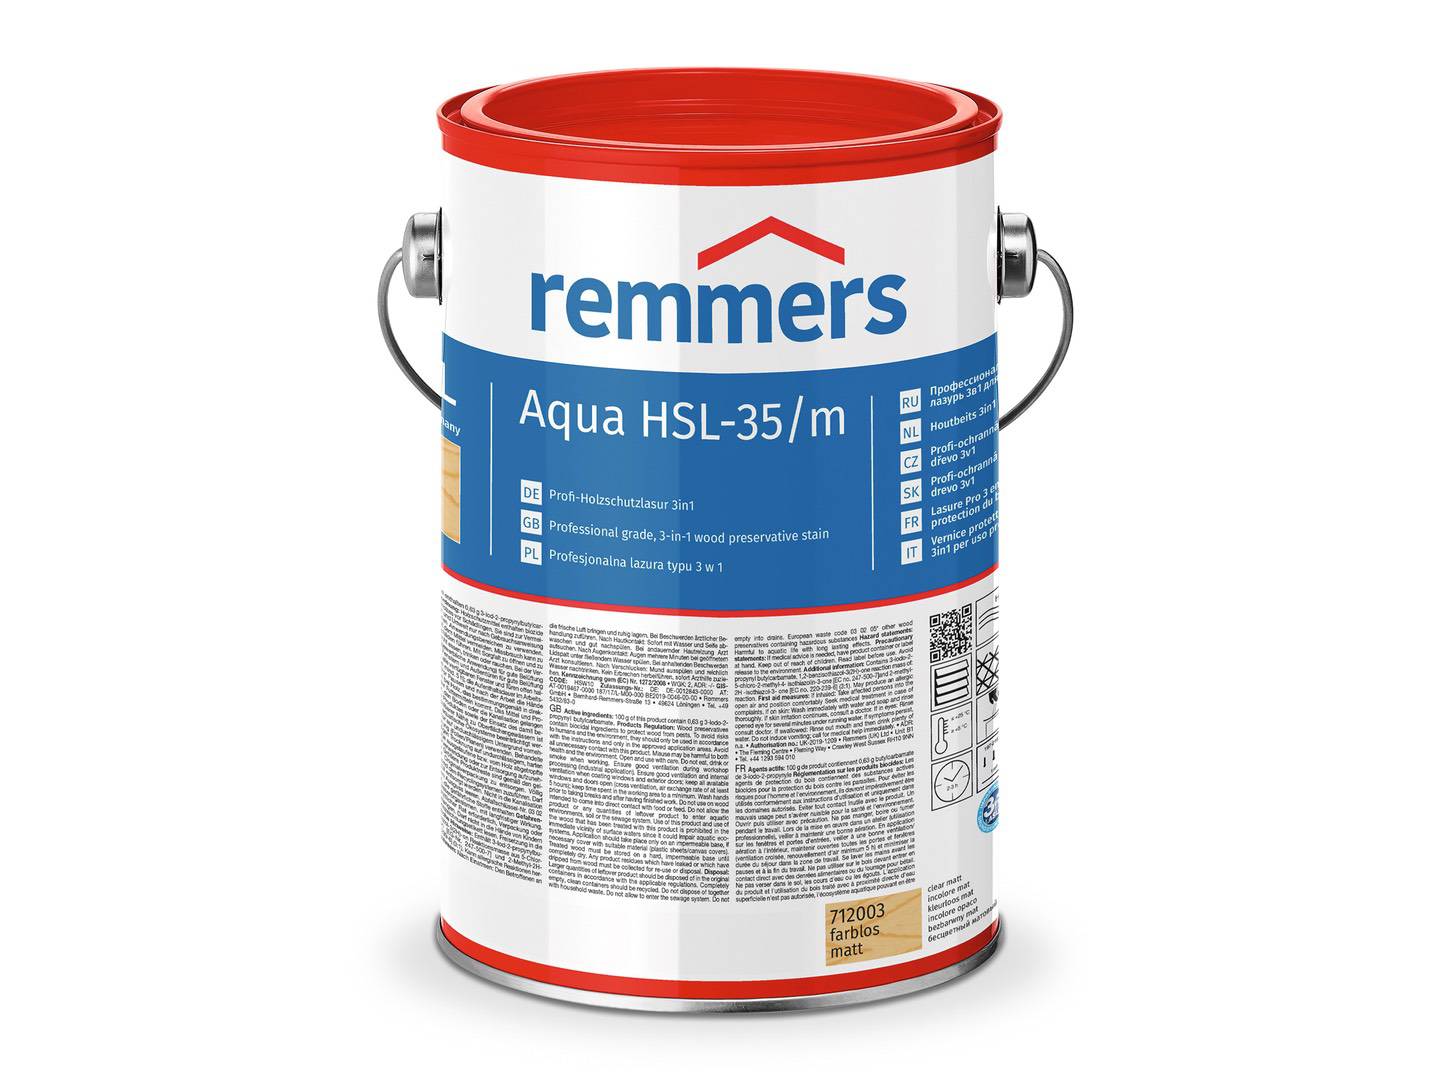 REMMERS Aqua HSL-35/m-Profi-Holzschutz-Lasur 3in1 nussbaum (RC-660) 20 l